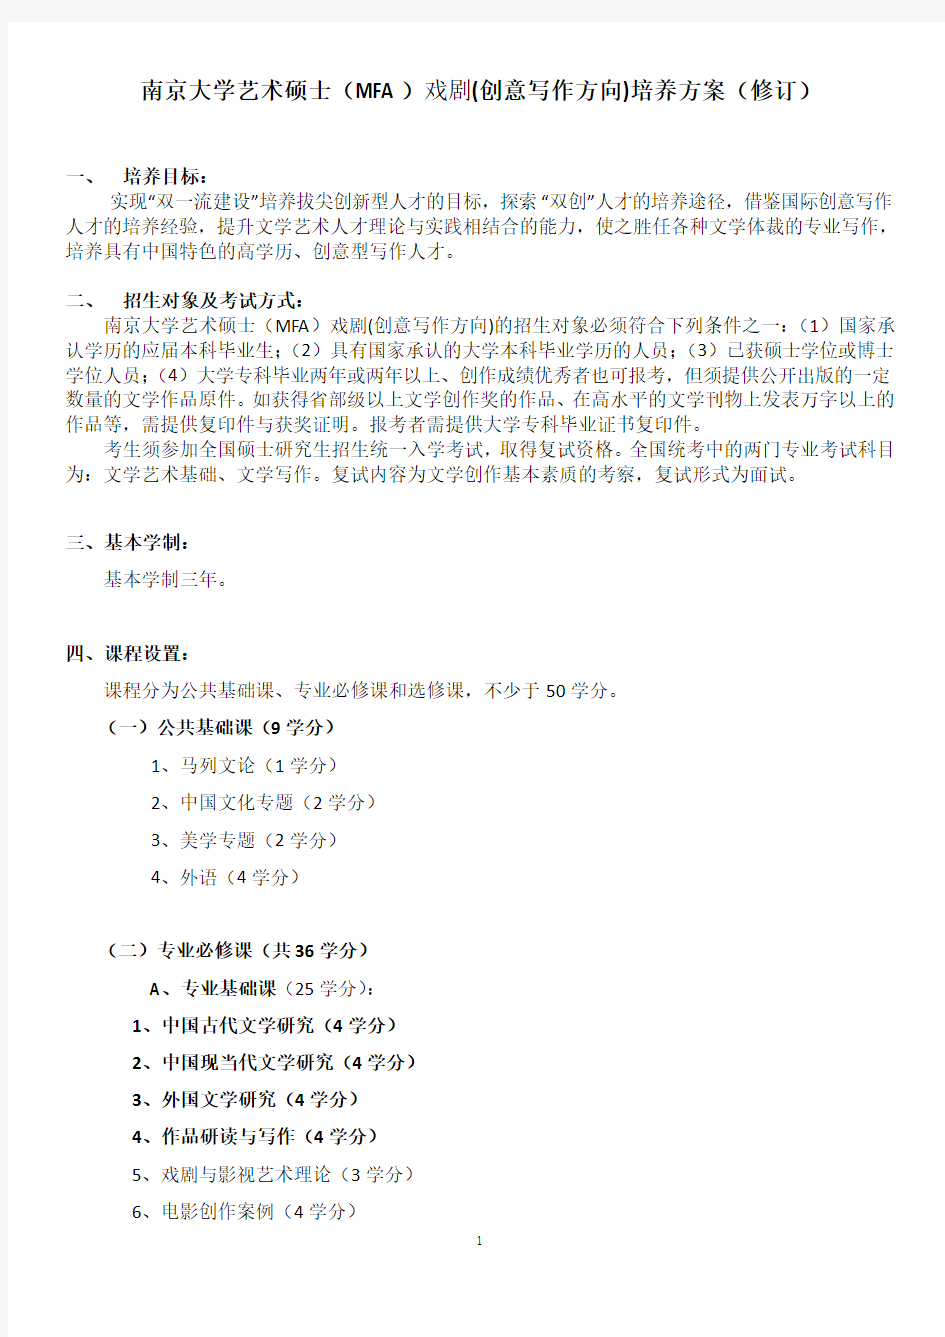 1351 南京大学艺术硕士(MFA)戏剧(创意写作方向)培养方案(2019版)